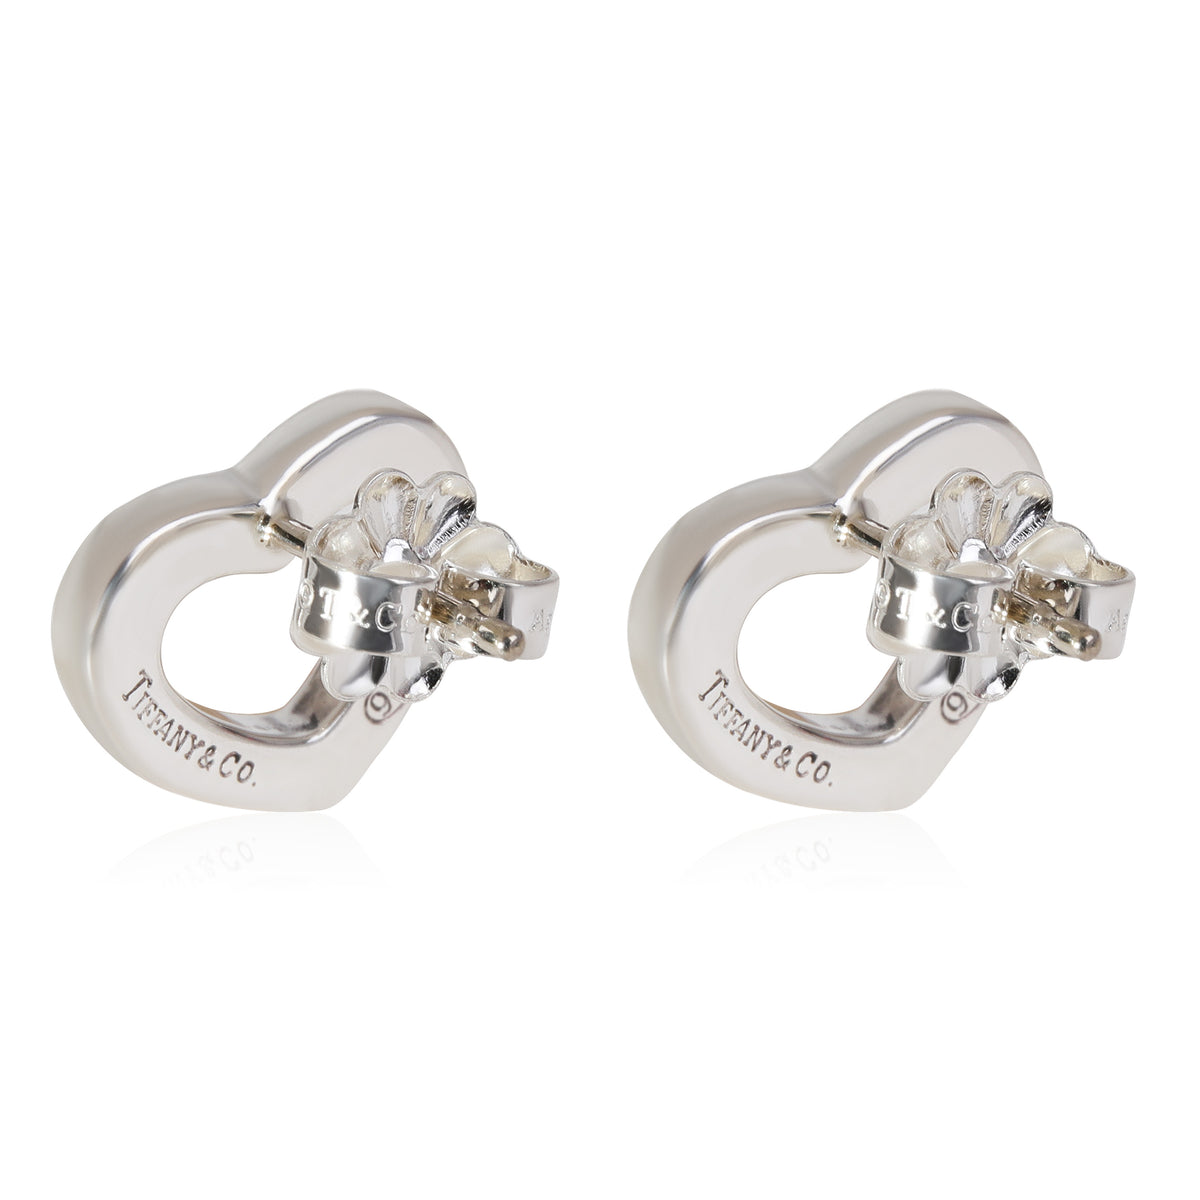 Tiffany & Co. Elsa Peretti Open Heart Earrings in Sterling Silver